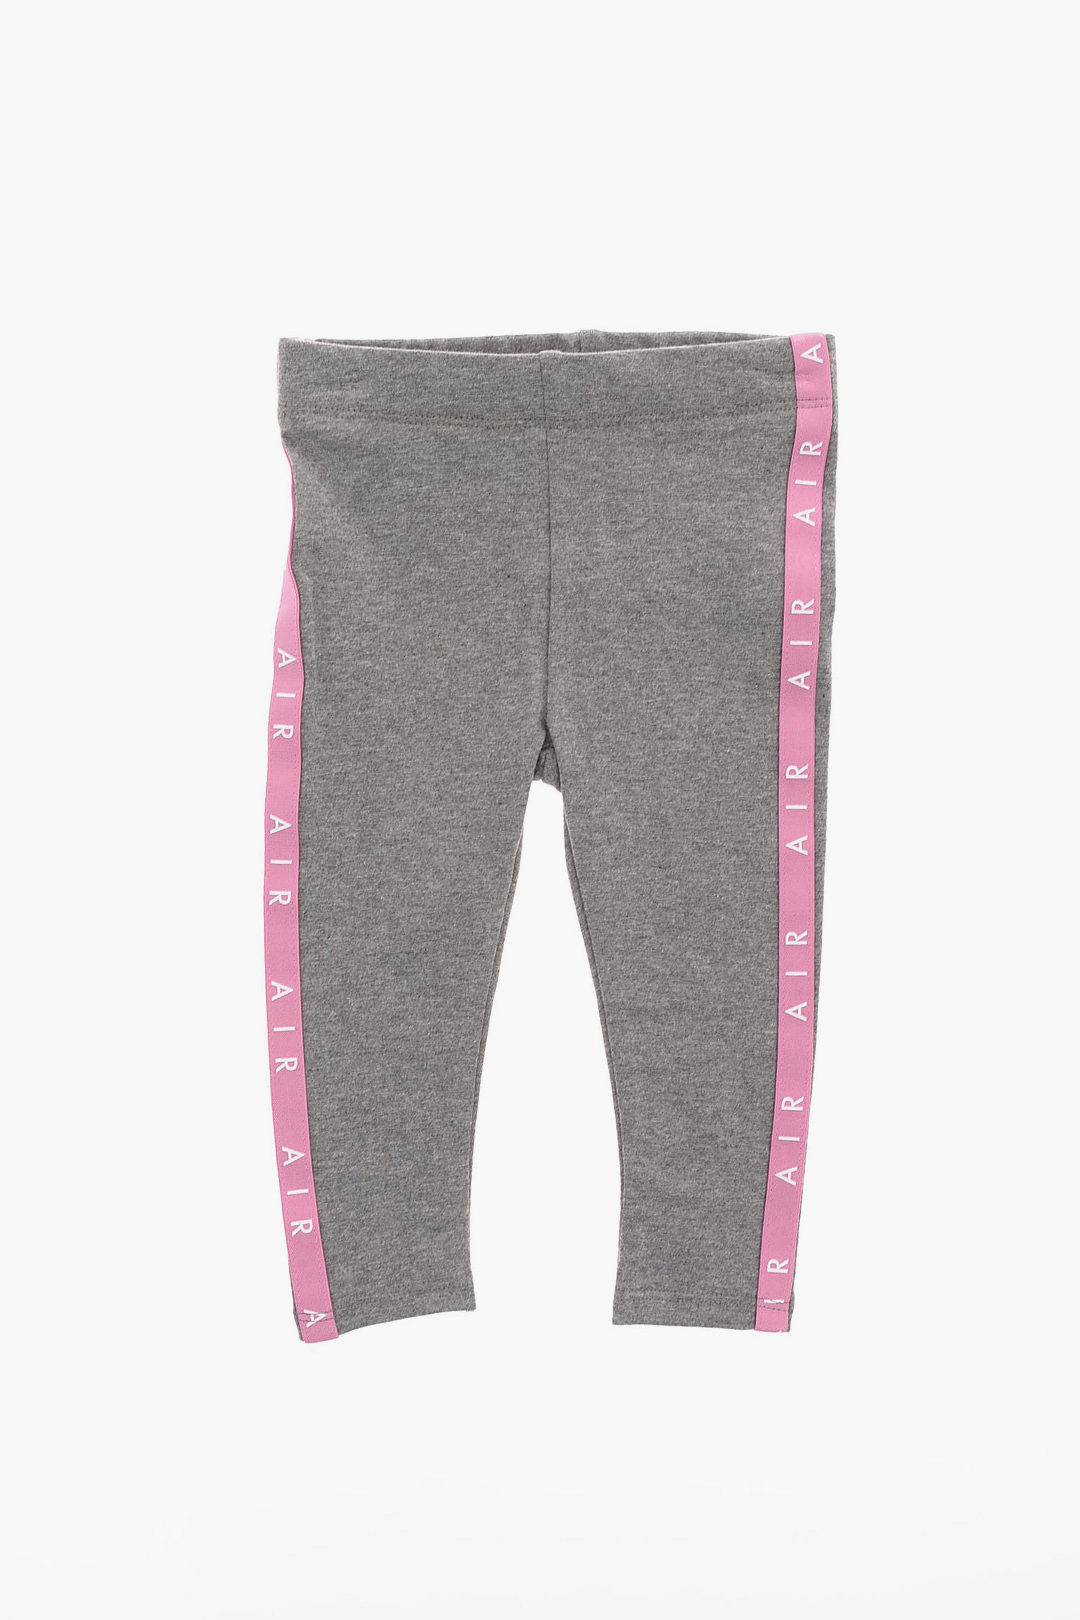 Nike - Girls Pink & Grey Leggings Set